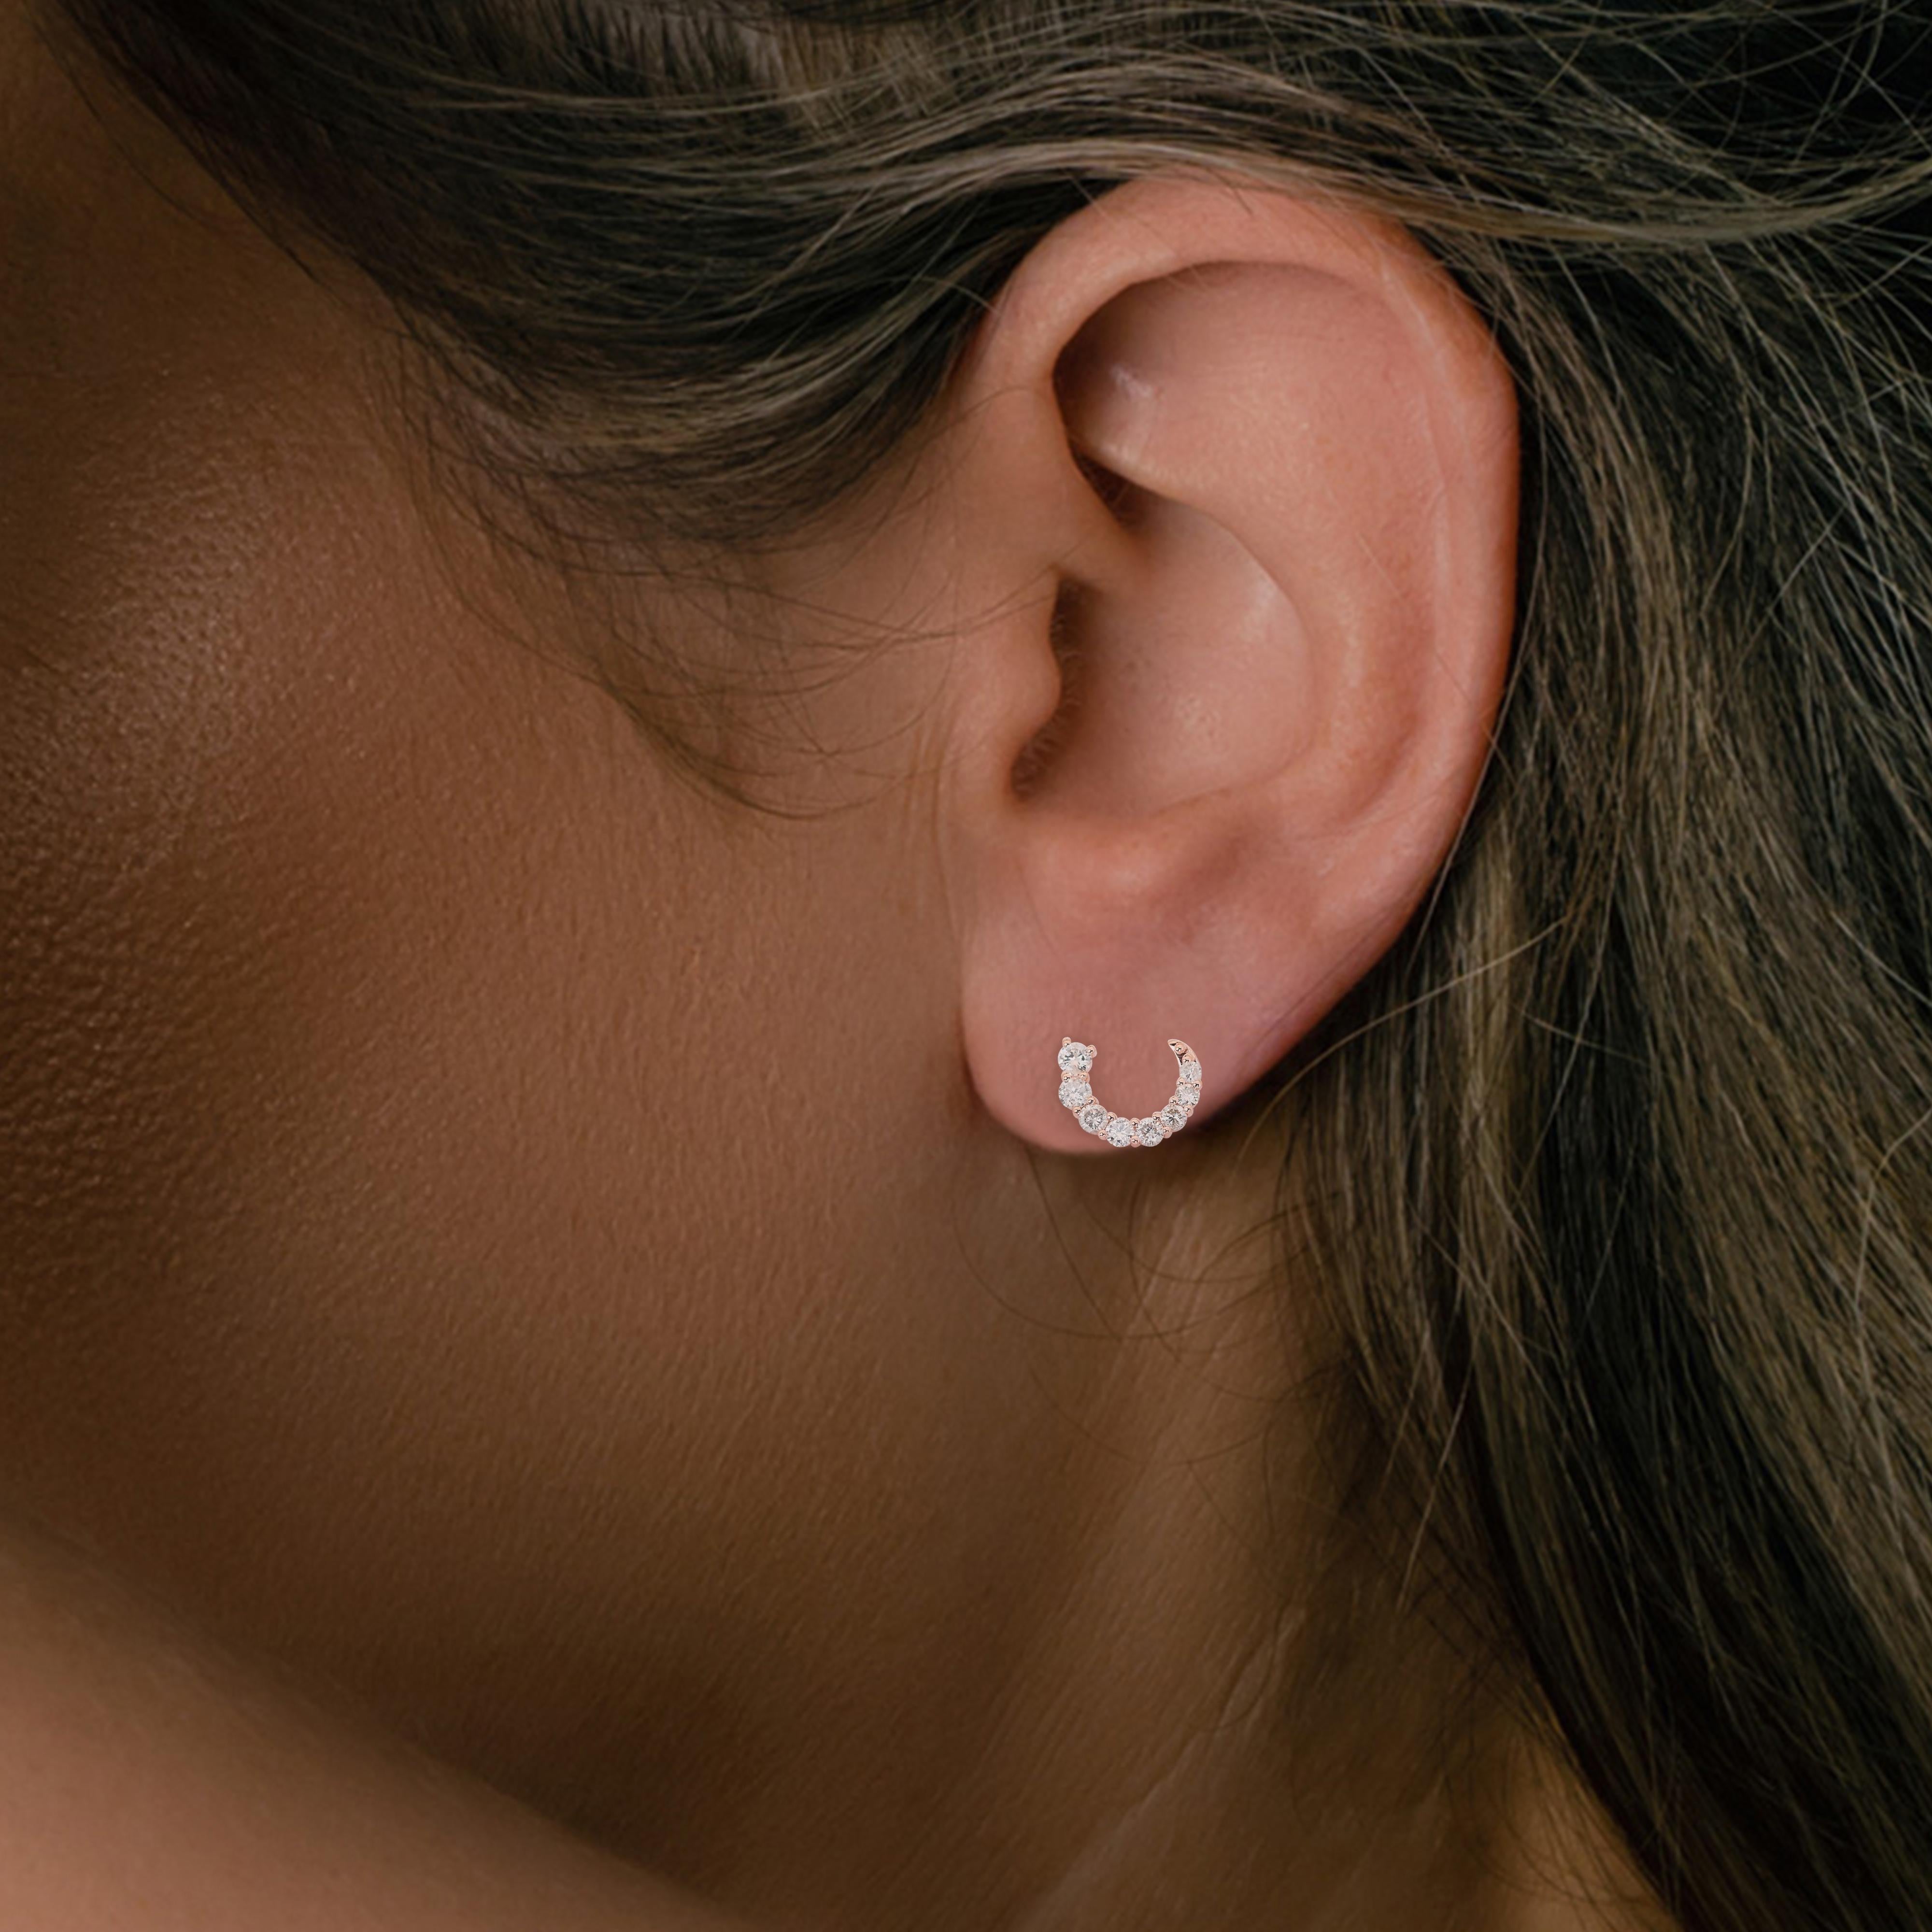 Faszinierende 14k Rose Gold Natürliche Diamant-Ohrringe mit 1,85 Karat - IGI zertifiziert

Diese faszinierenden Ohrringe aus 14-karätigem Roségold mit natürlichen Diamanten sind von zeitloser Eleganz. Diese Ohrringe sind IGI-zertifiziert, um die